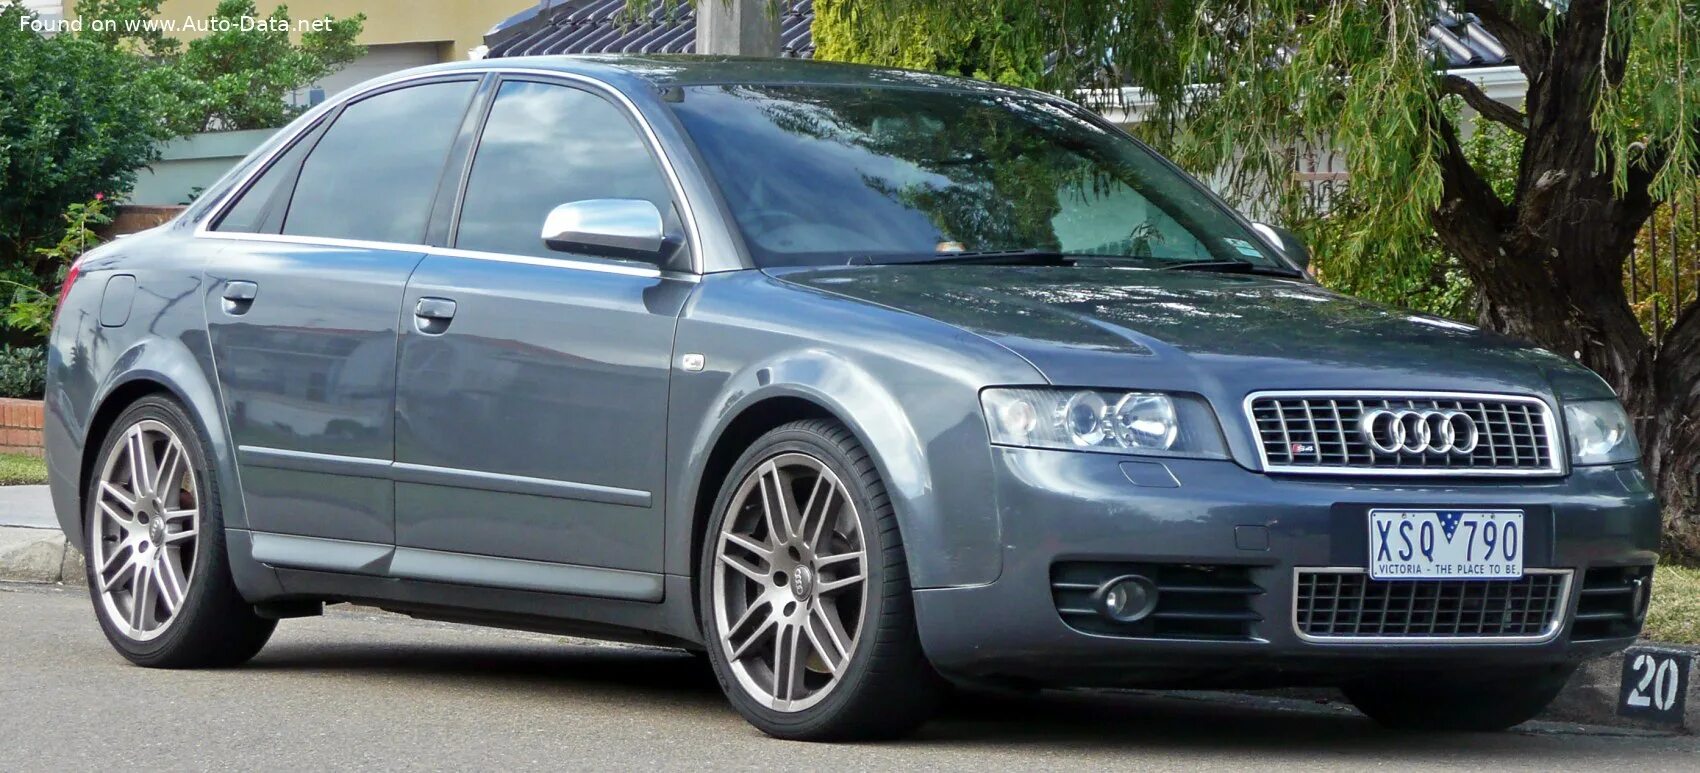 B6 b4 b9. Audi a4 b6 2004. Audi a4 b6 2003. Audi s4 b6. Audi a4 s4 b6.